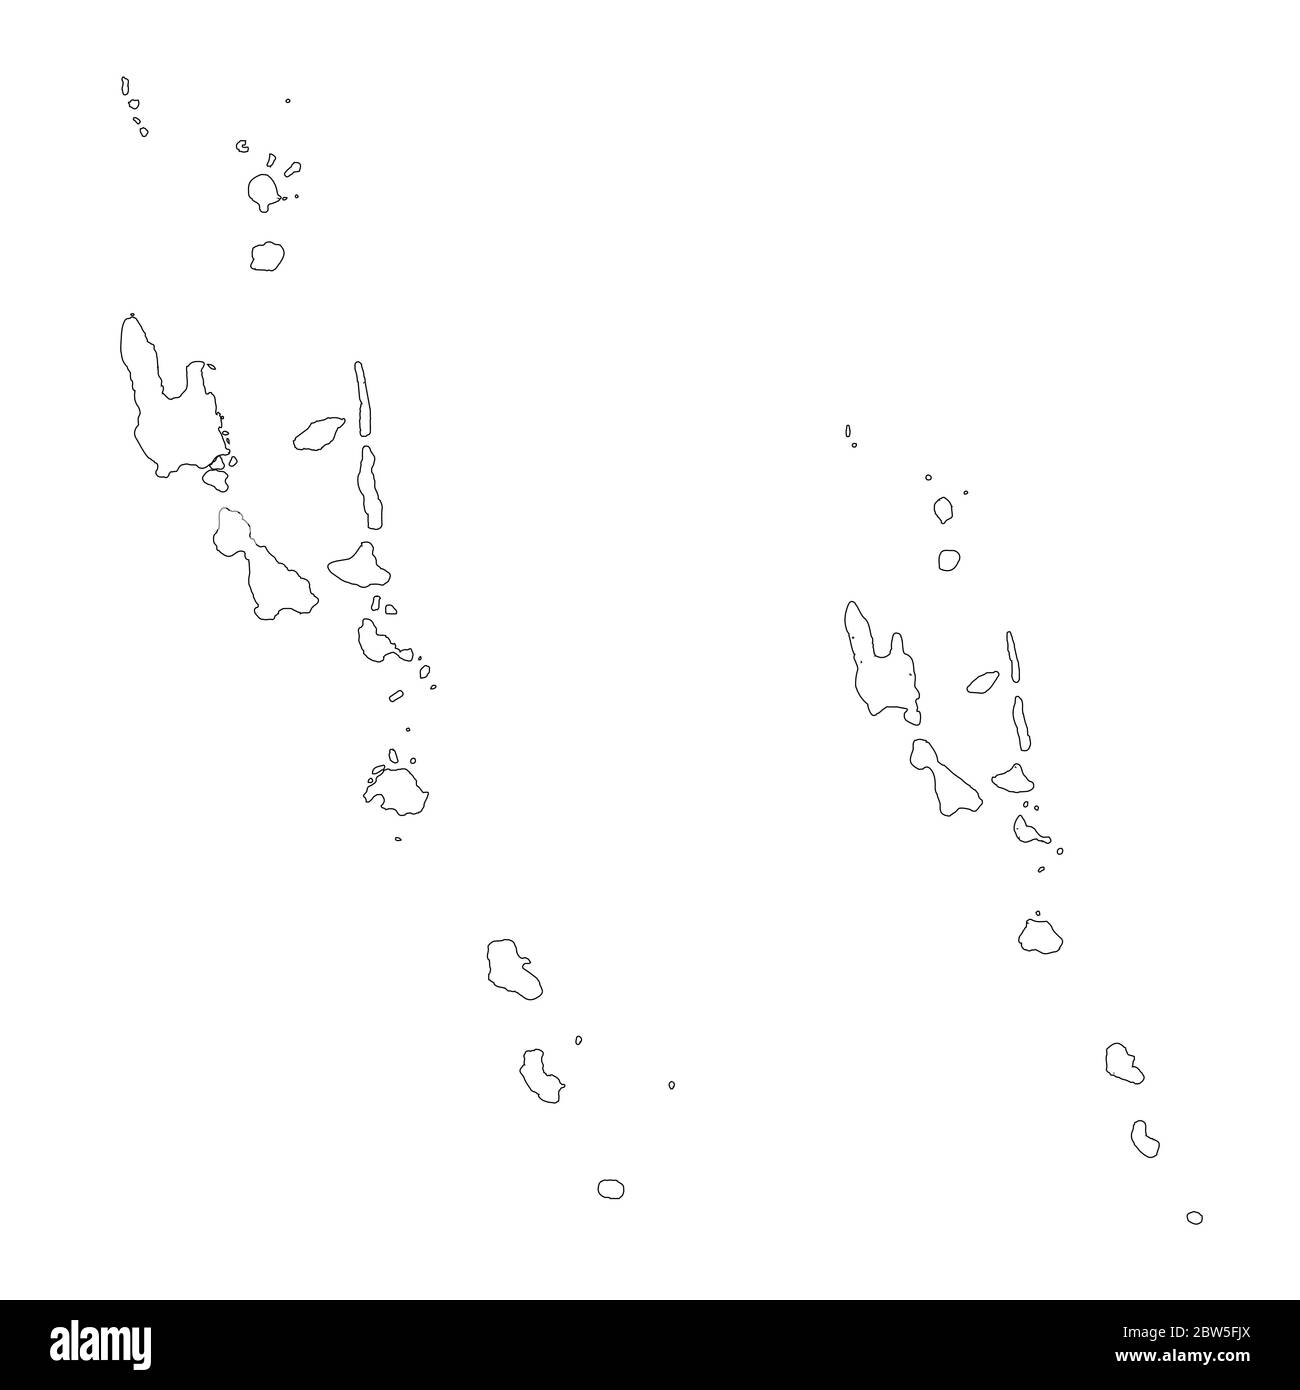 Vektorkarte Vanuatu und Port vila. Land und Hauptstadt. Isolierte Vektorgrafik. Übersicht. EPS 10-Abbildung. Stock Vektor